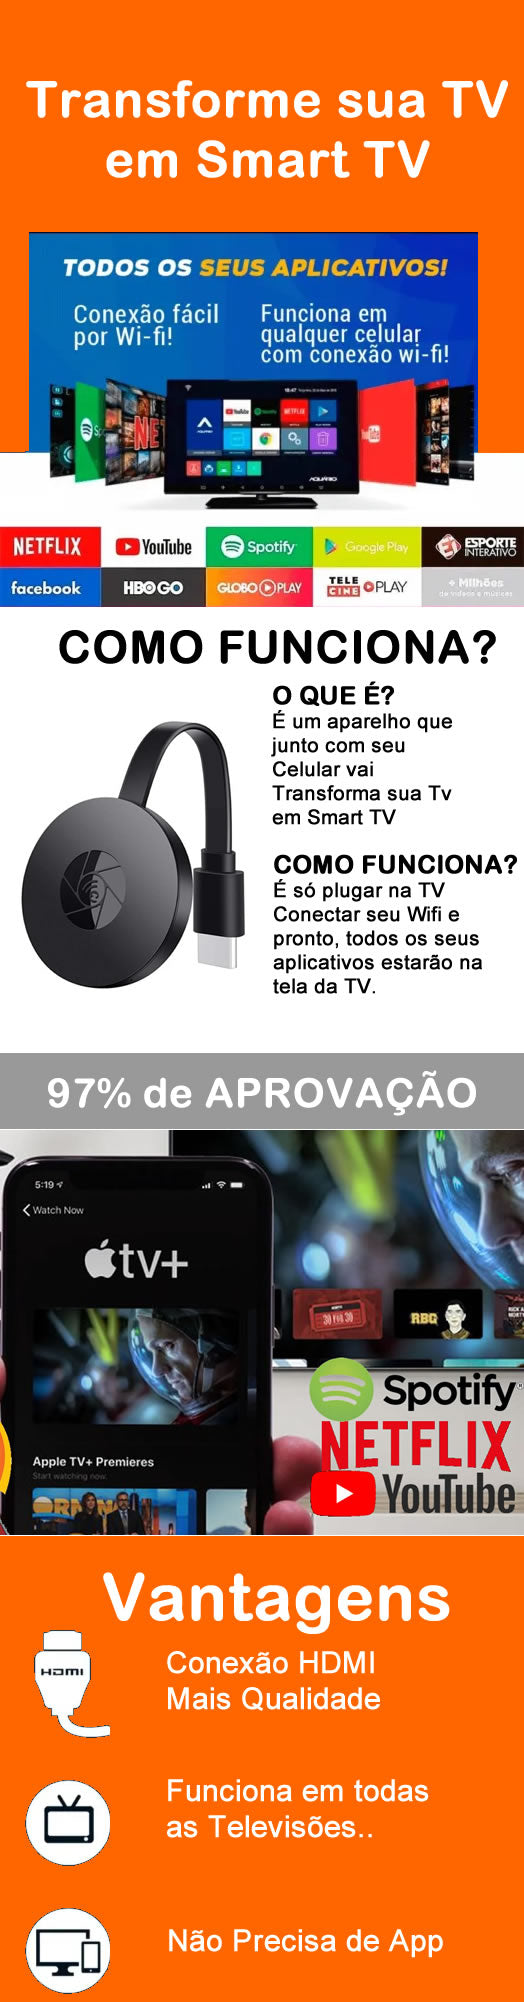 Chromecast 2 Tv Cast 5.0 HDMI 1080P - Shopcenteronline.com.br